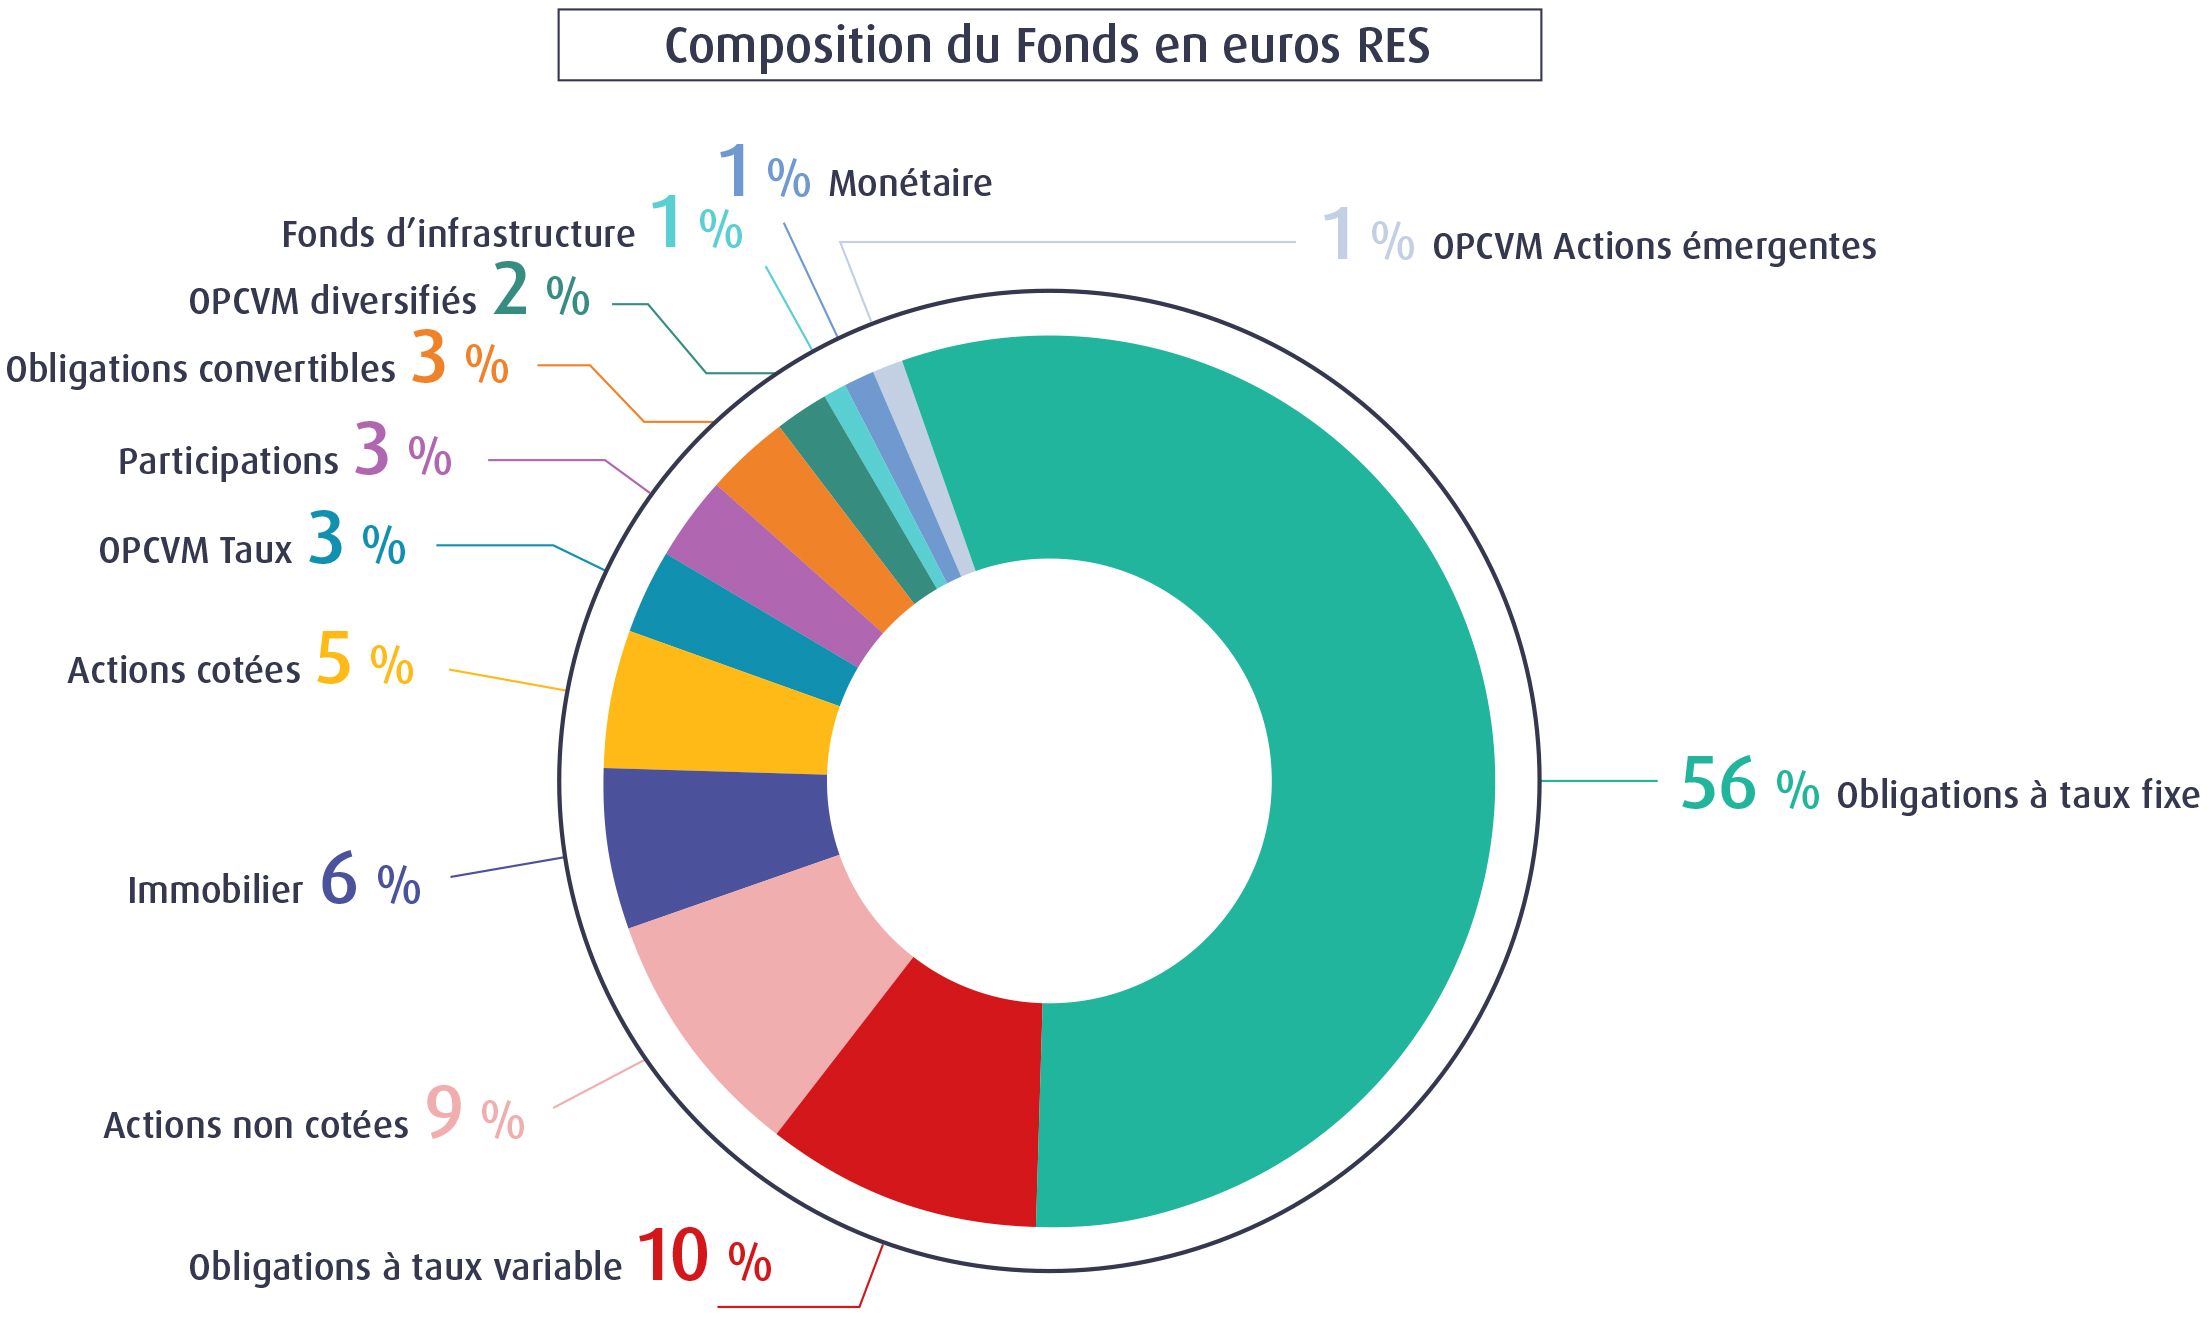 Composition du Fonds en euros RES